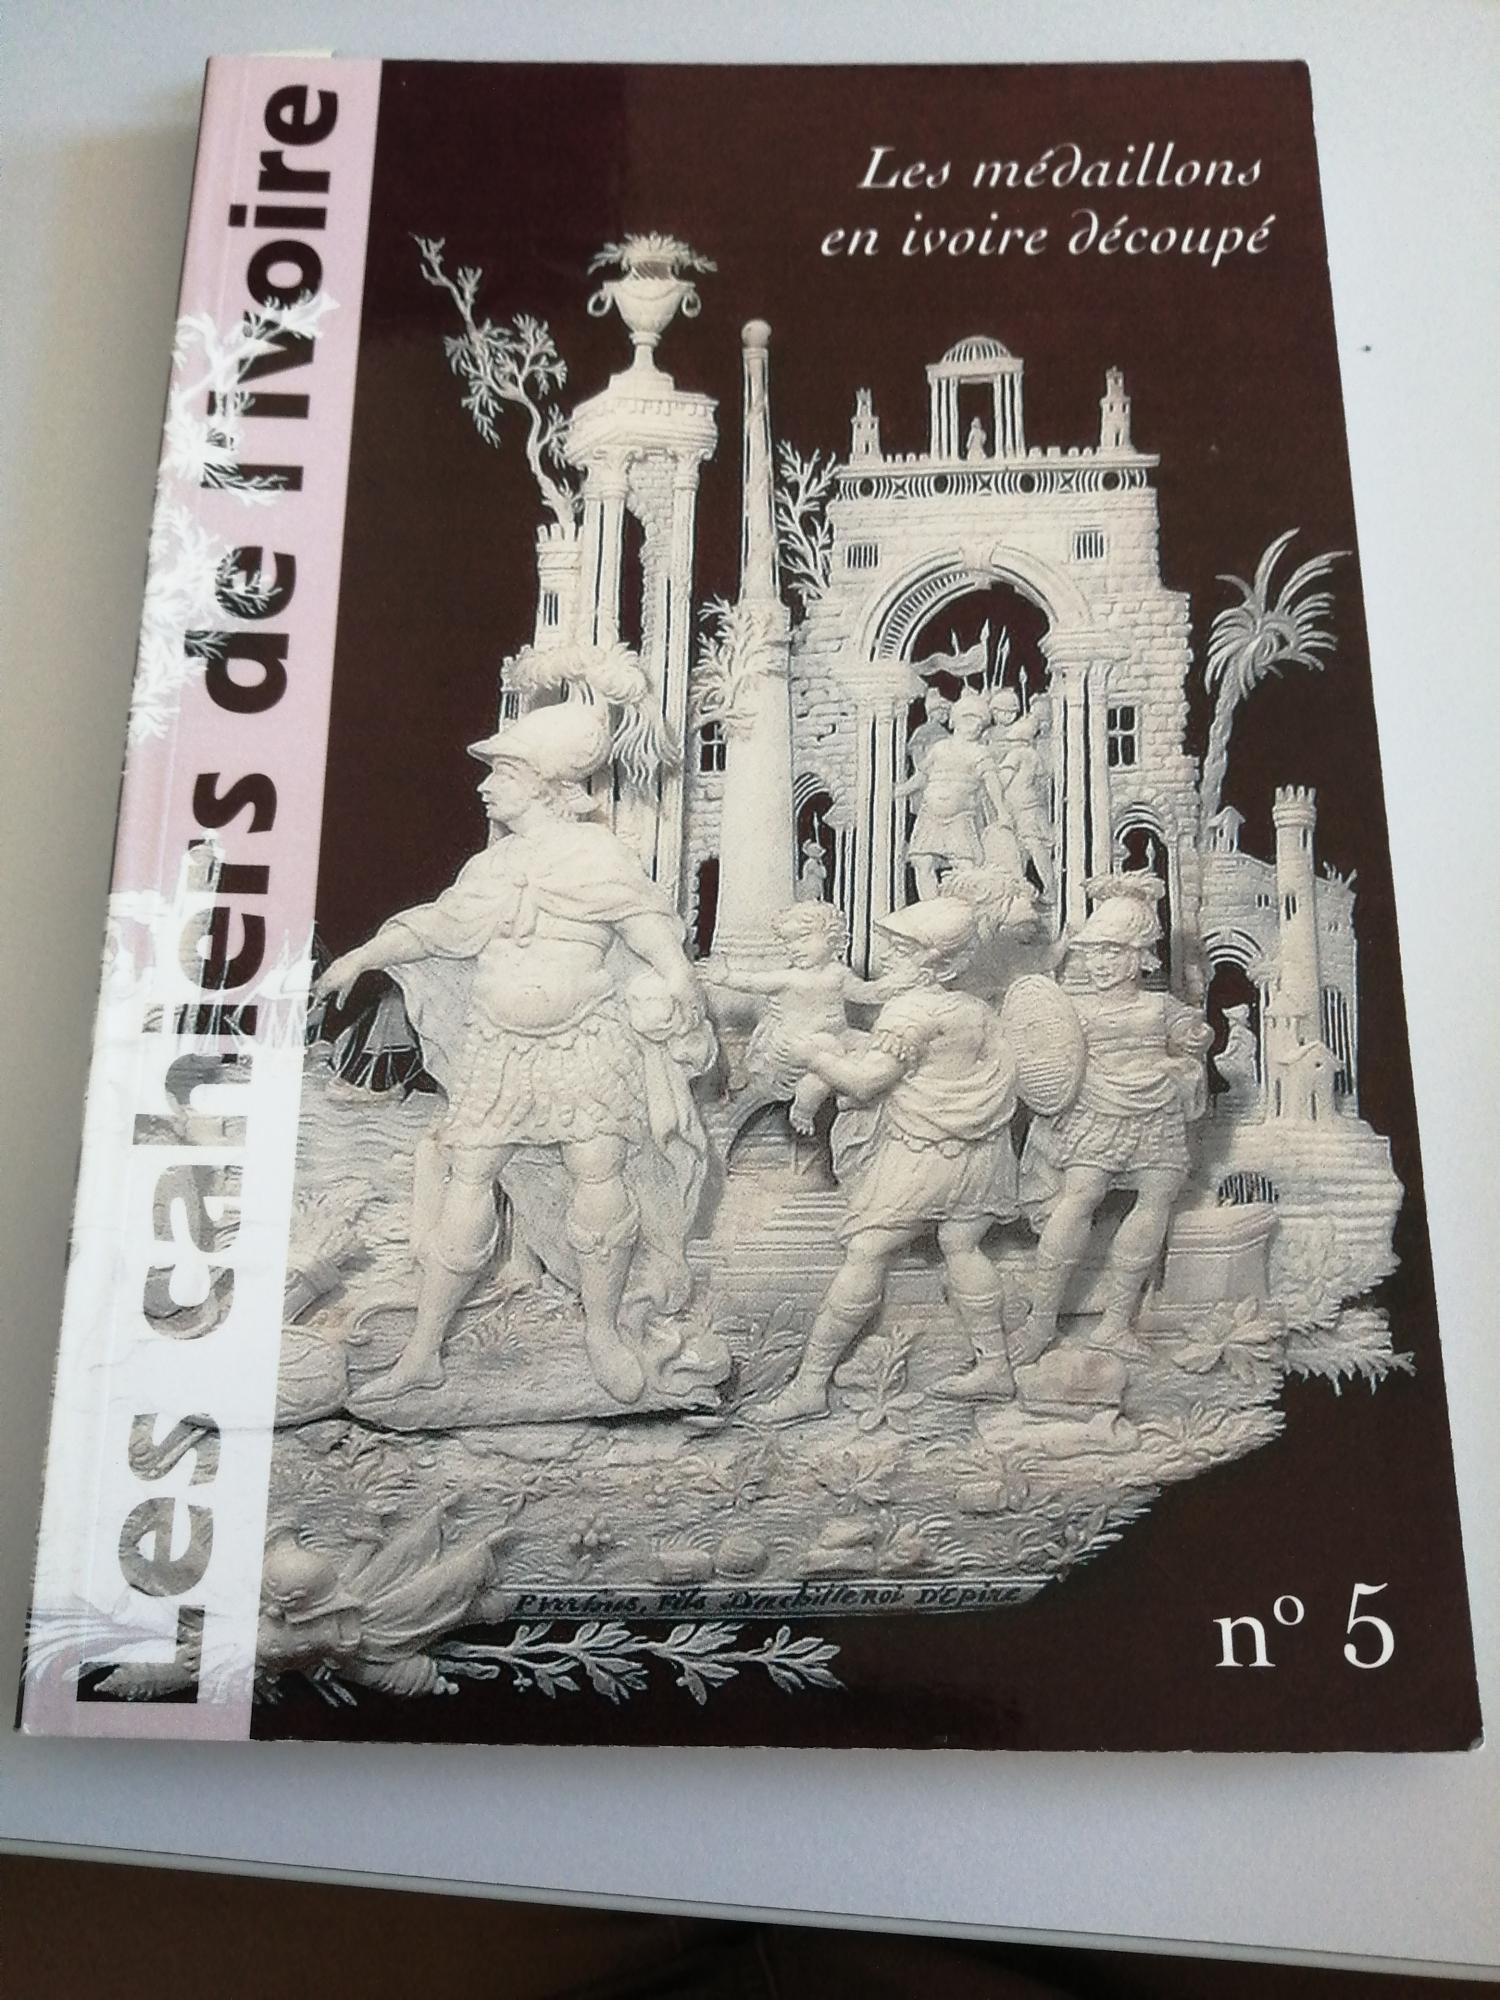 Les cahiers de l'ivoire n°5 "Les médaillons en ivoire découpé"